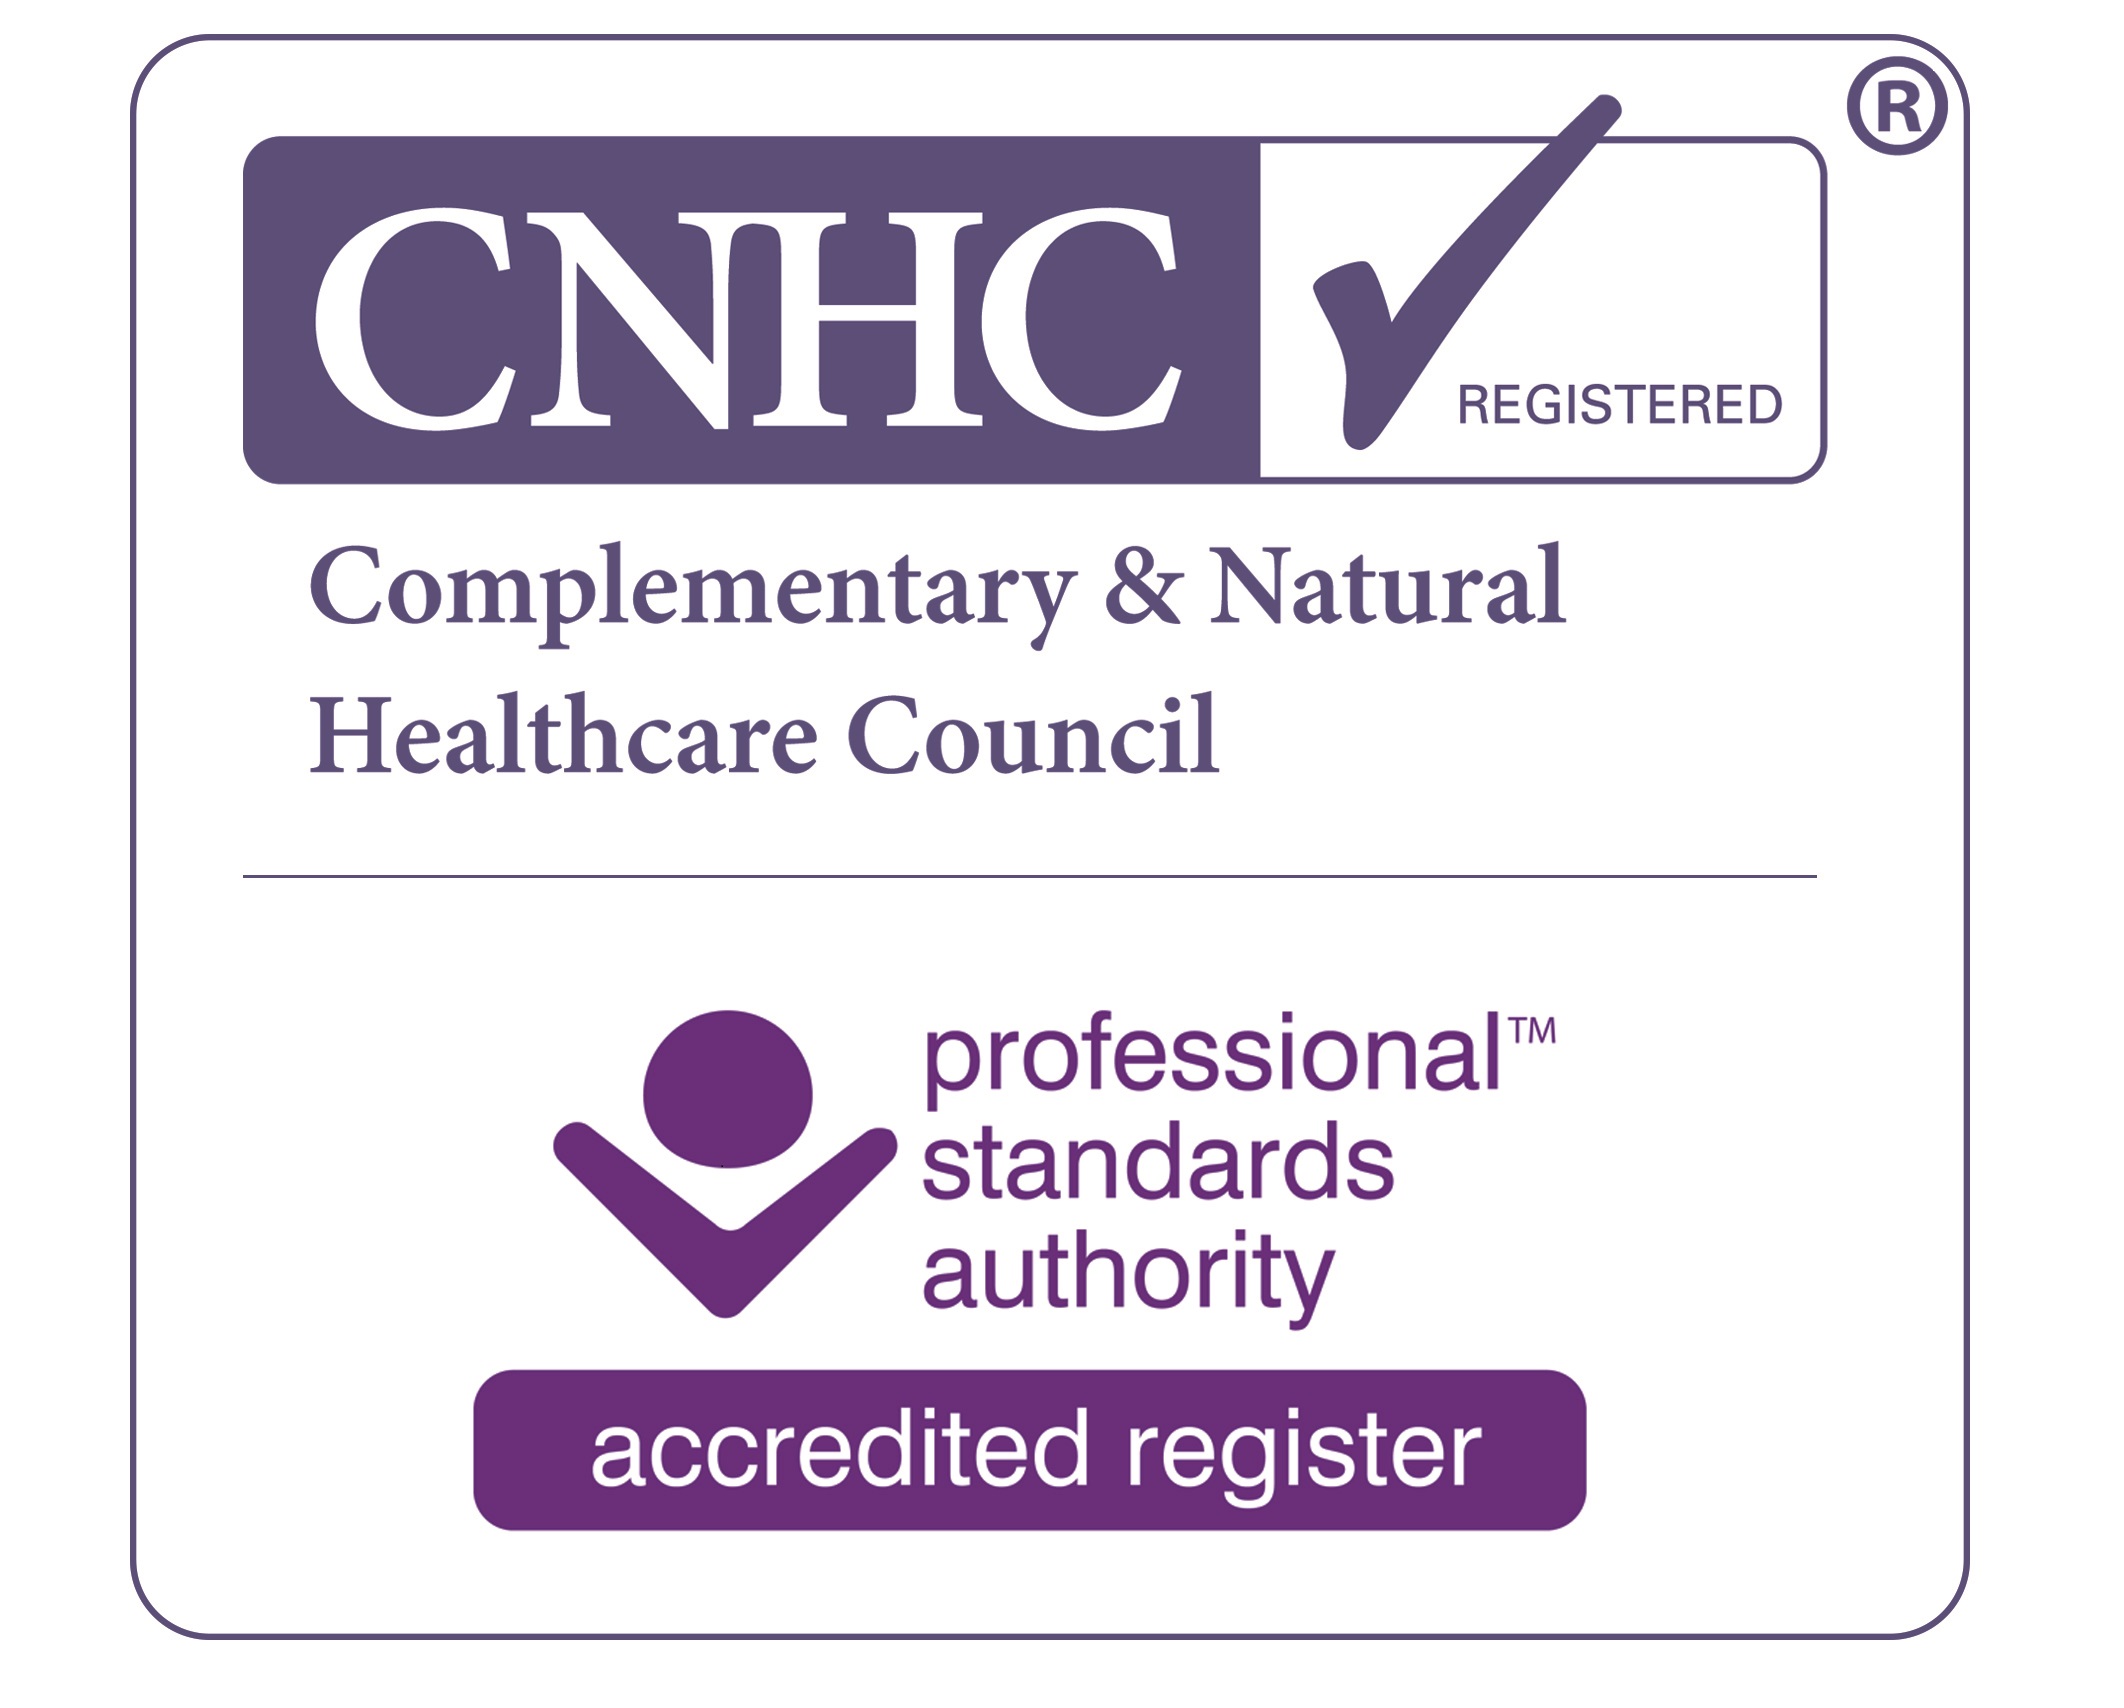 CNHC Quality Mark